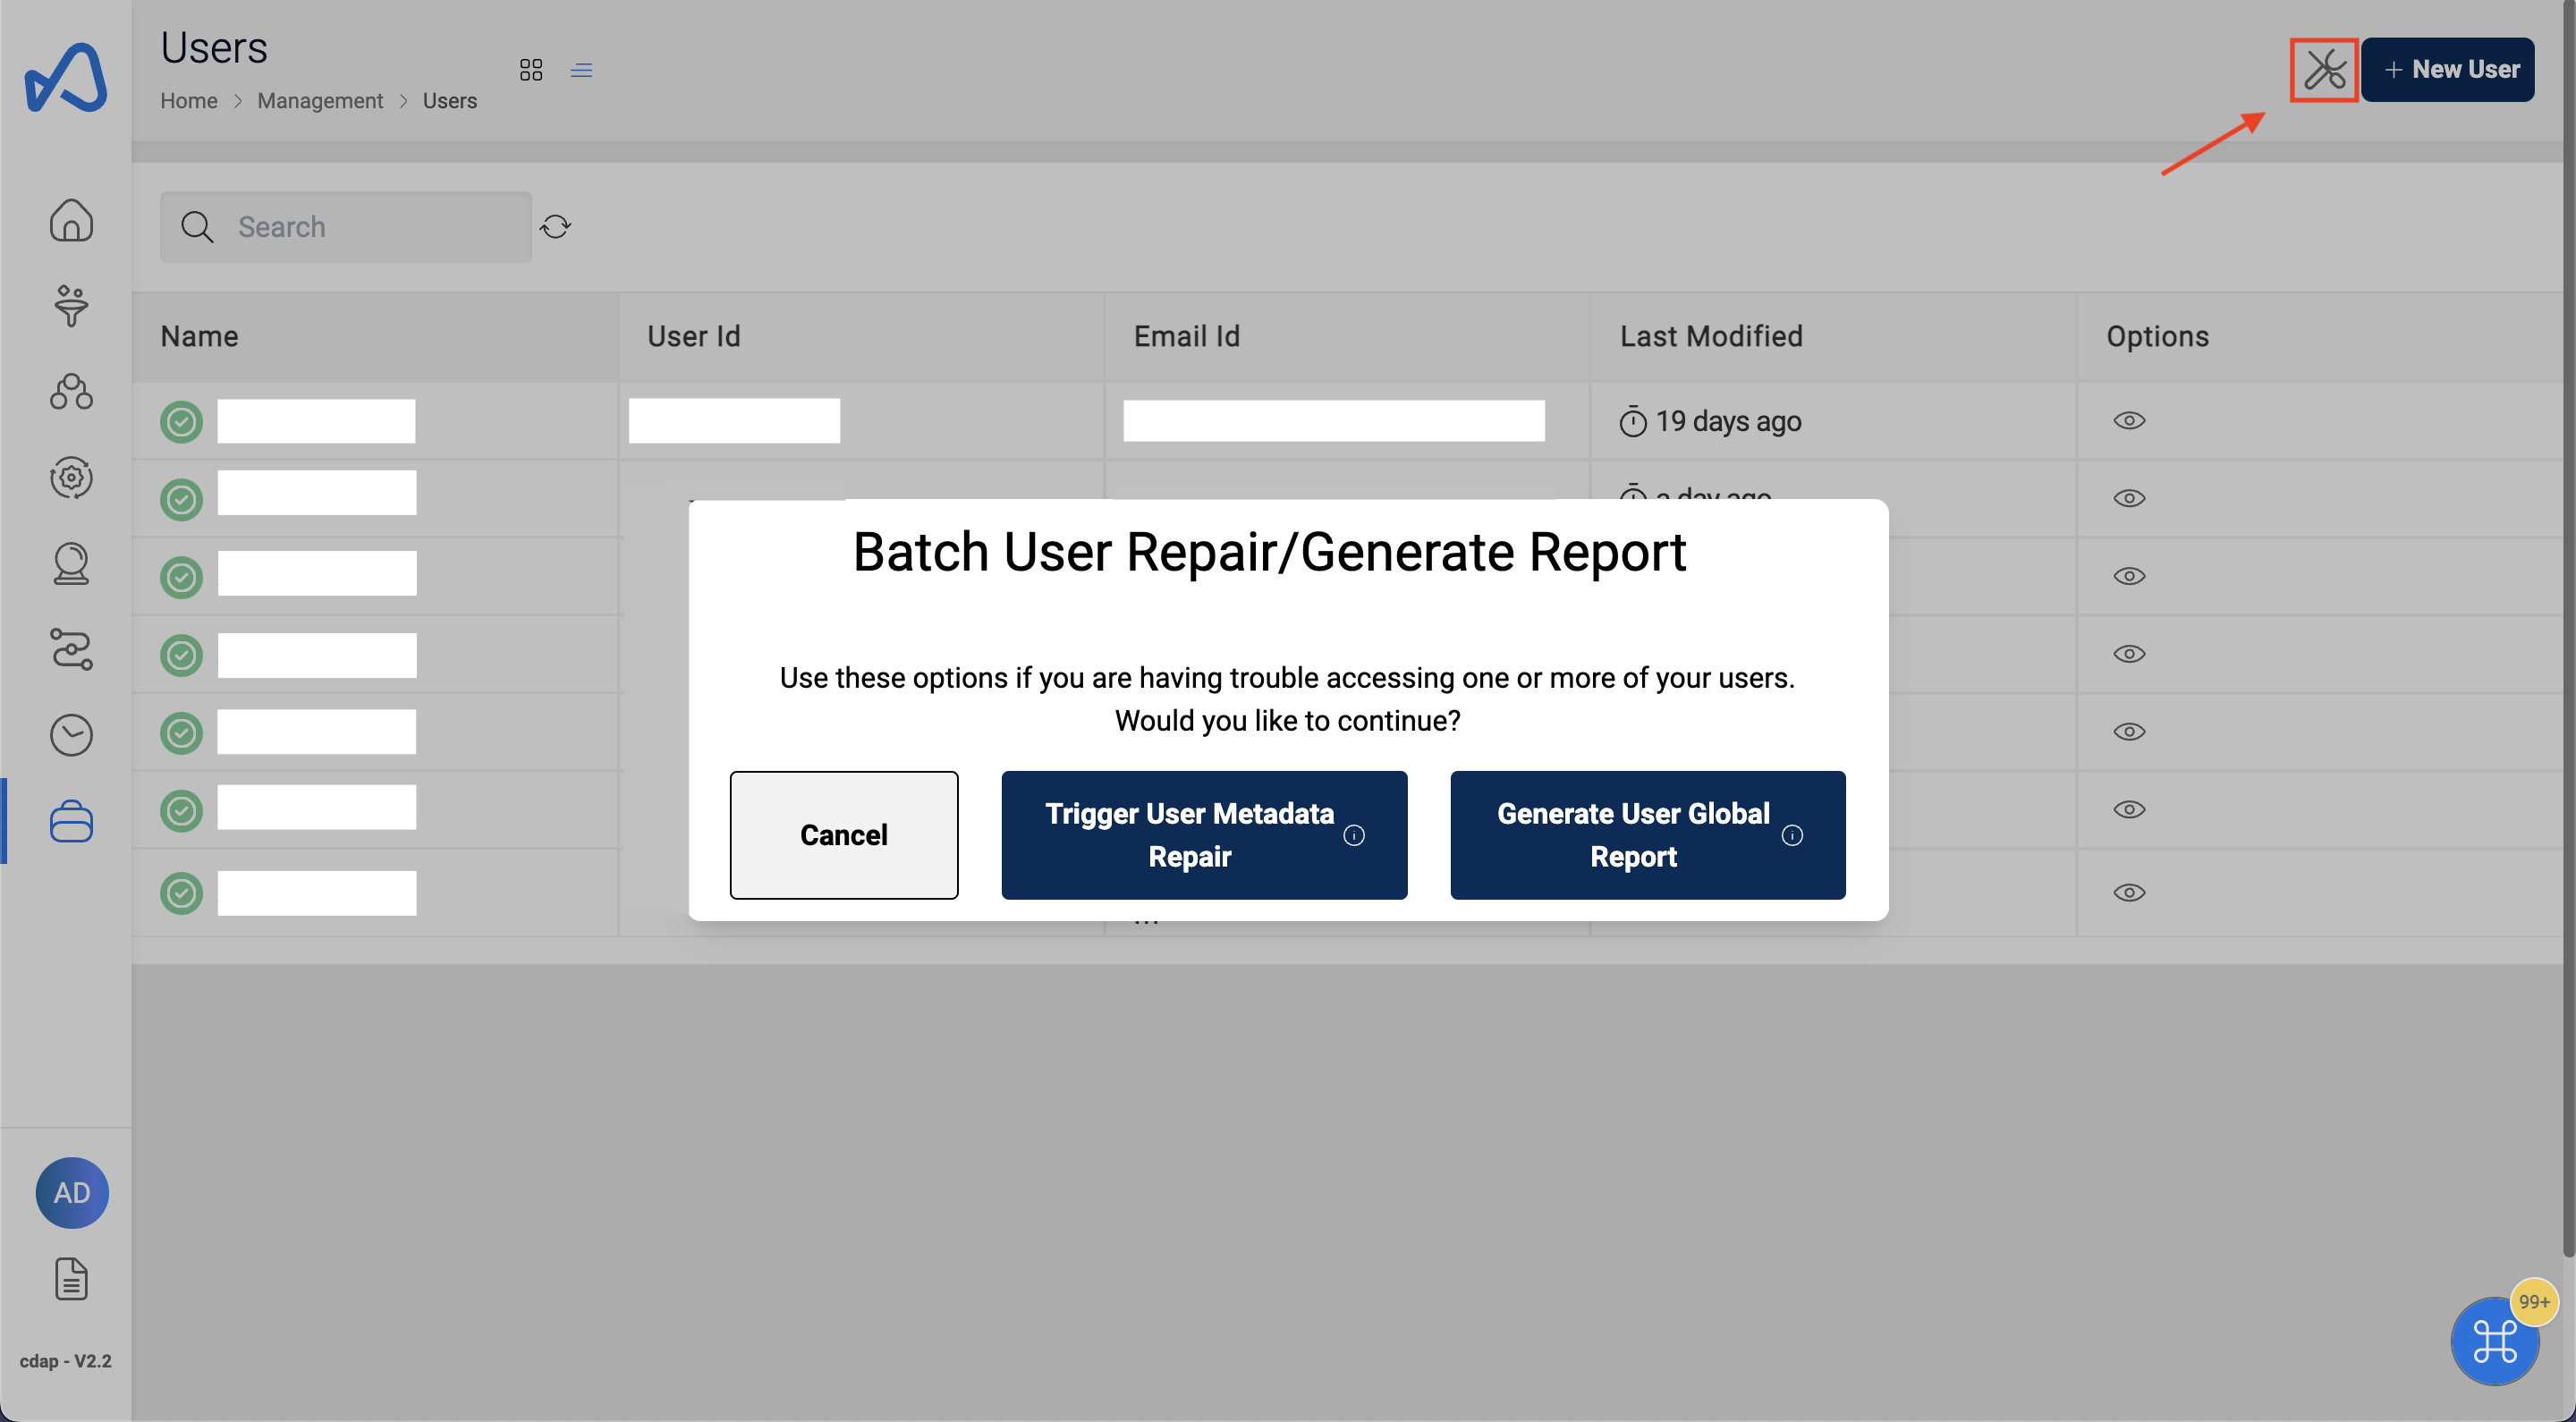 Batch User Repair